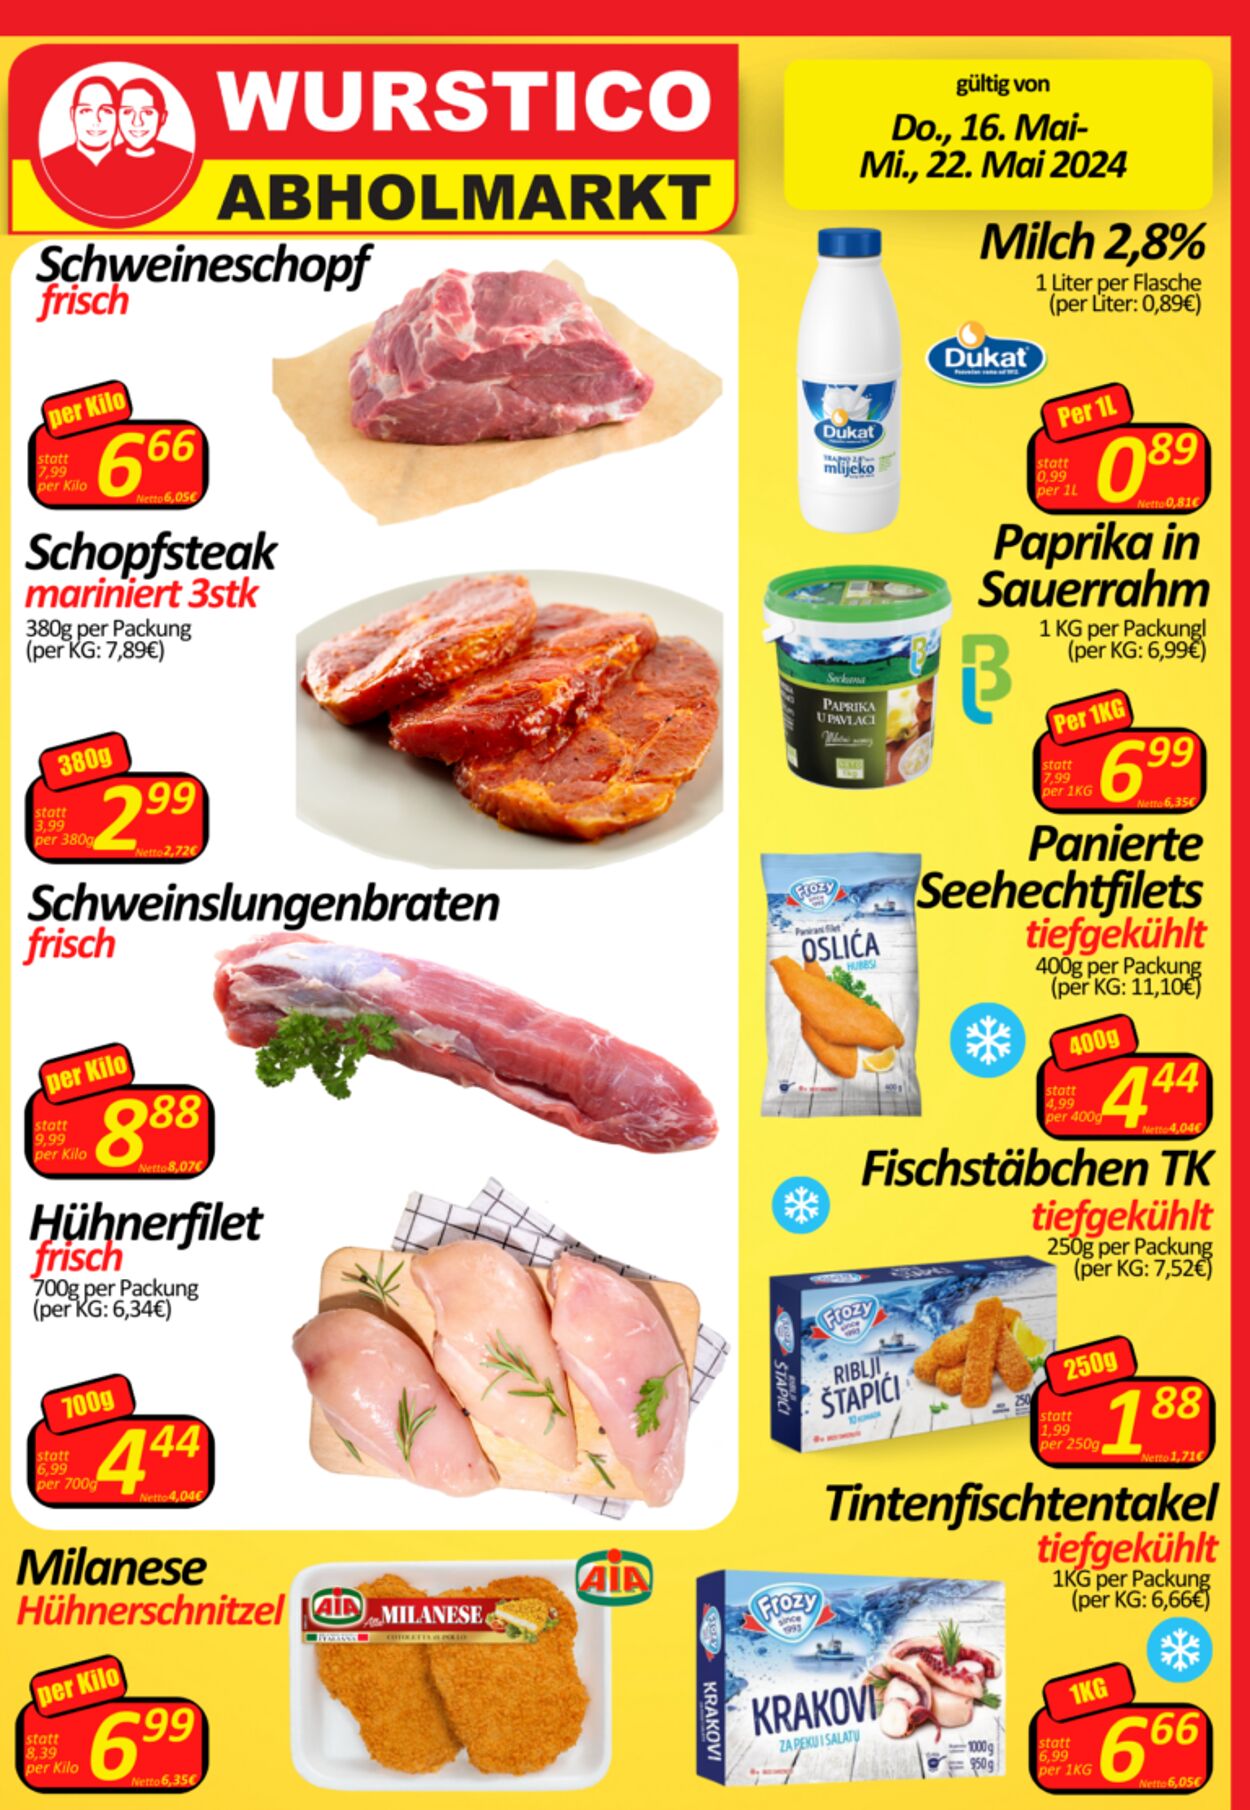 Prospekt Wurstico - Wurstico Abholmarkt – Wurst, Fleischwaren und mehr zu FabrikspreisenAktuelle Angebote bei Wurstico 16 Mai, 2024 - 22 Mai, 2024